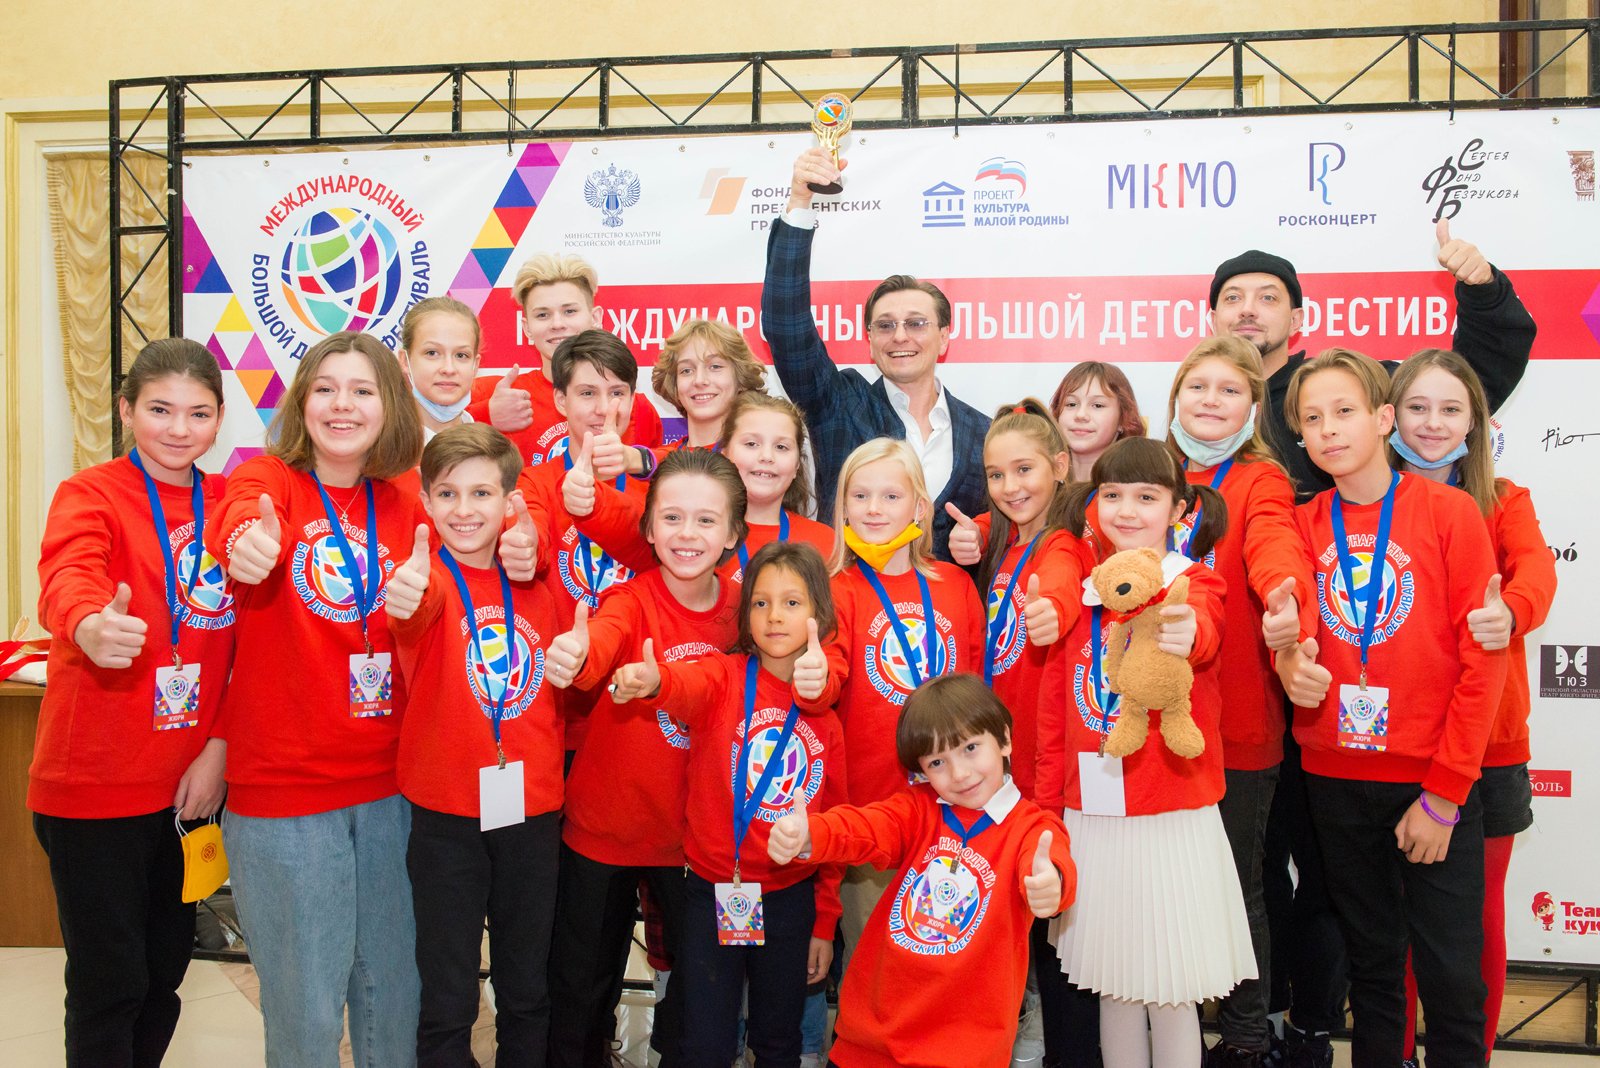 30 ноября пройдет закрытие III Международного Большого Детского фестиваля